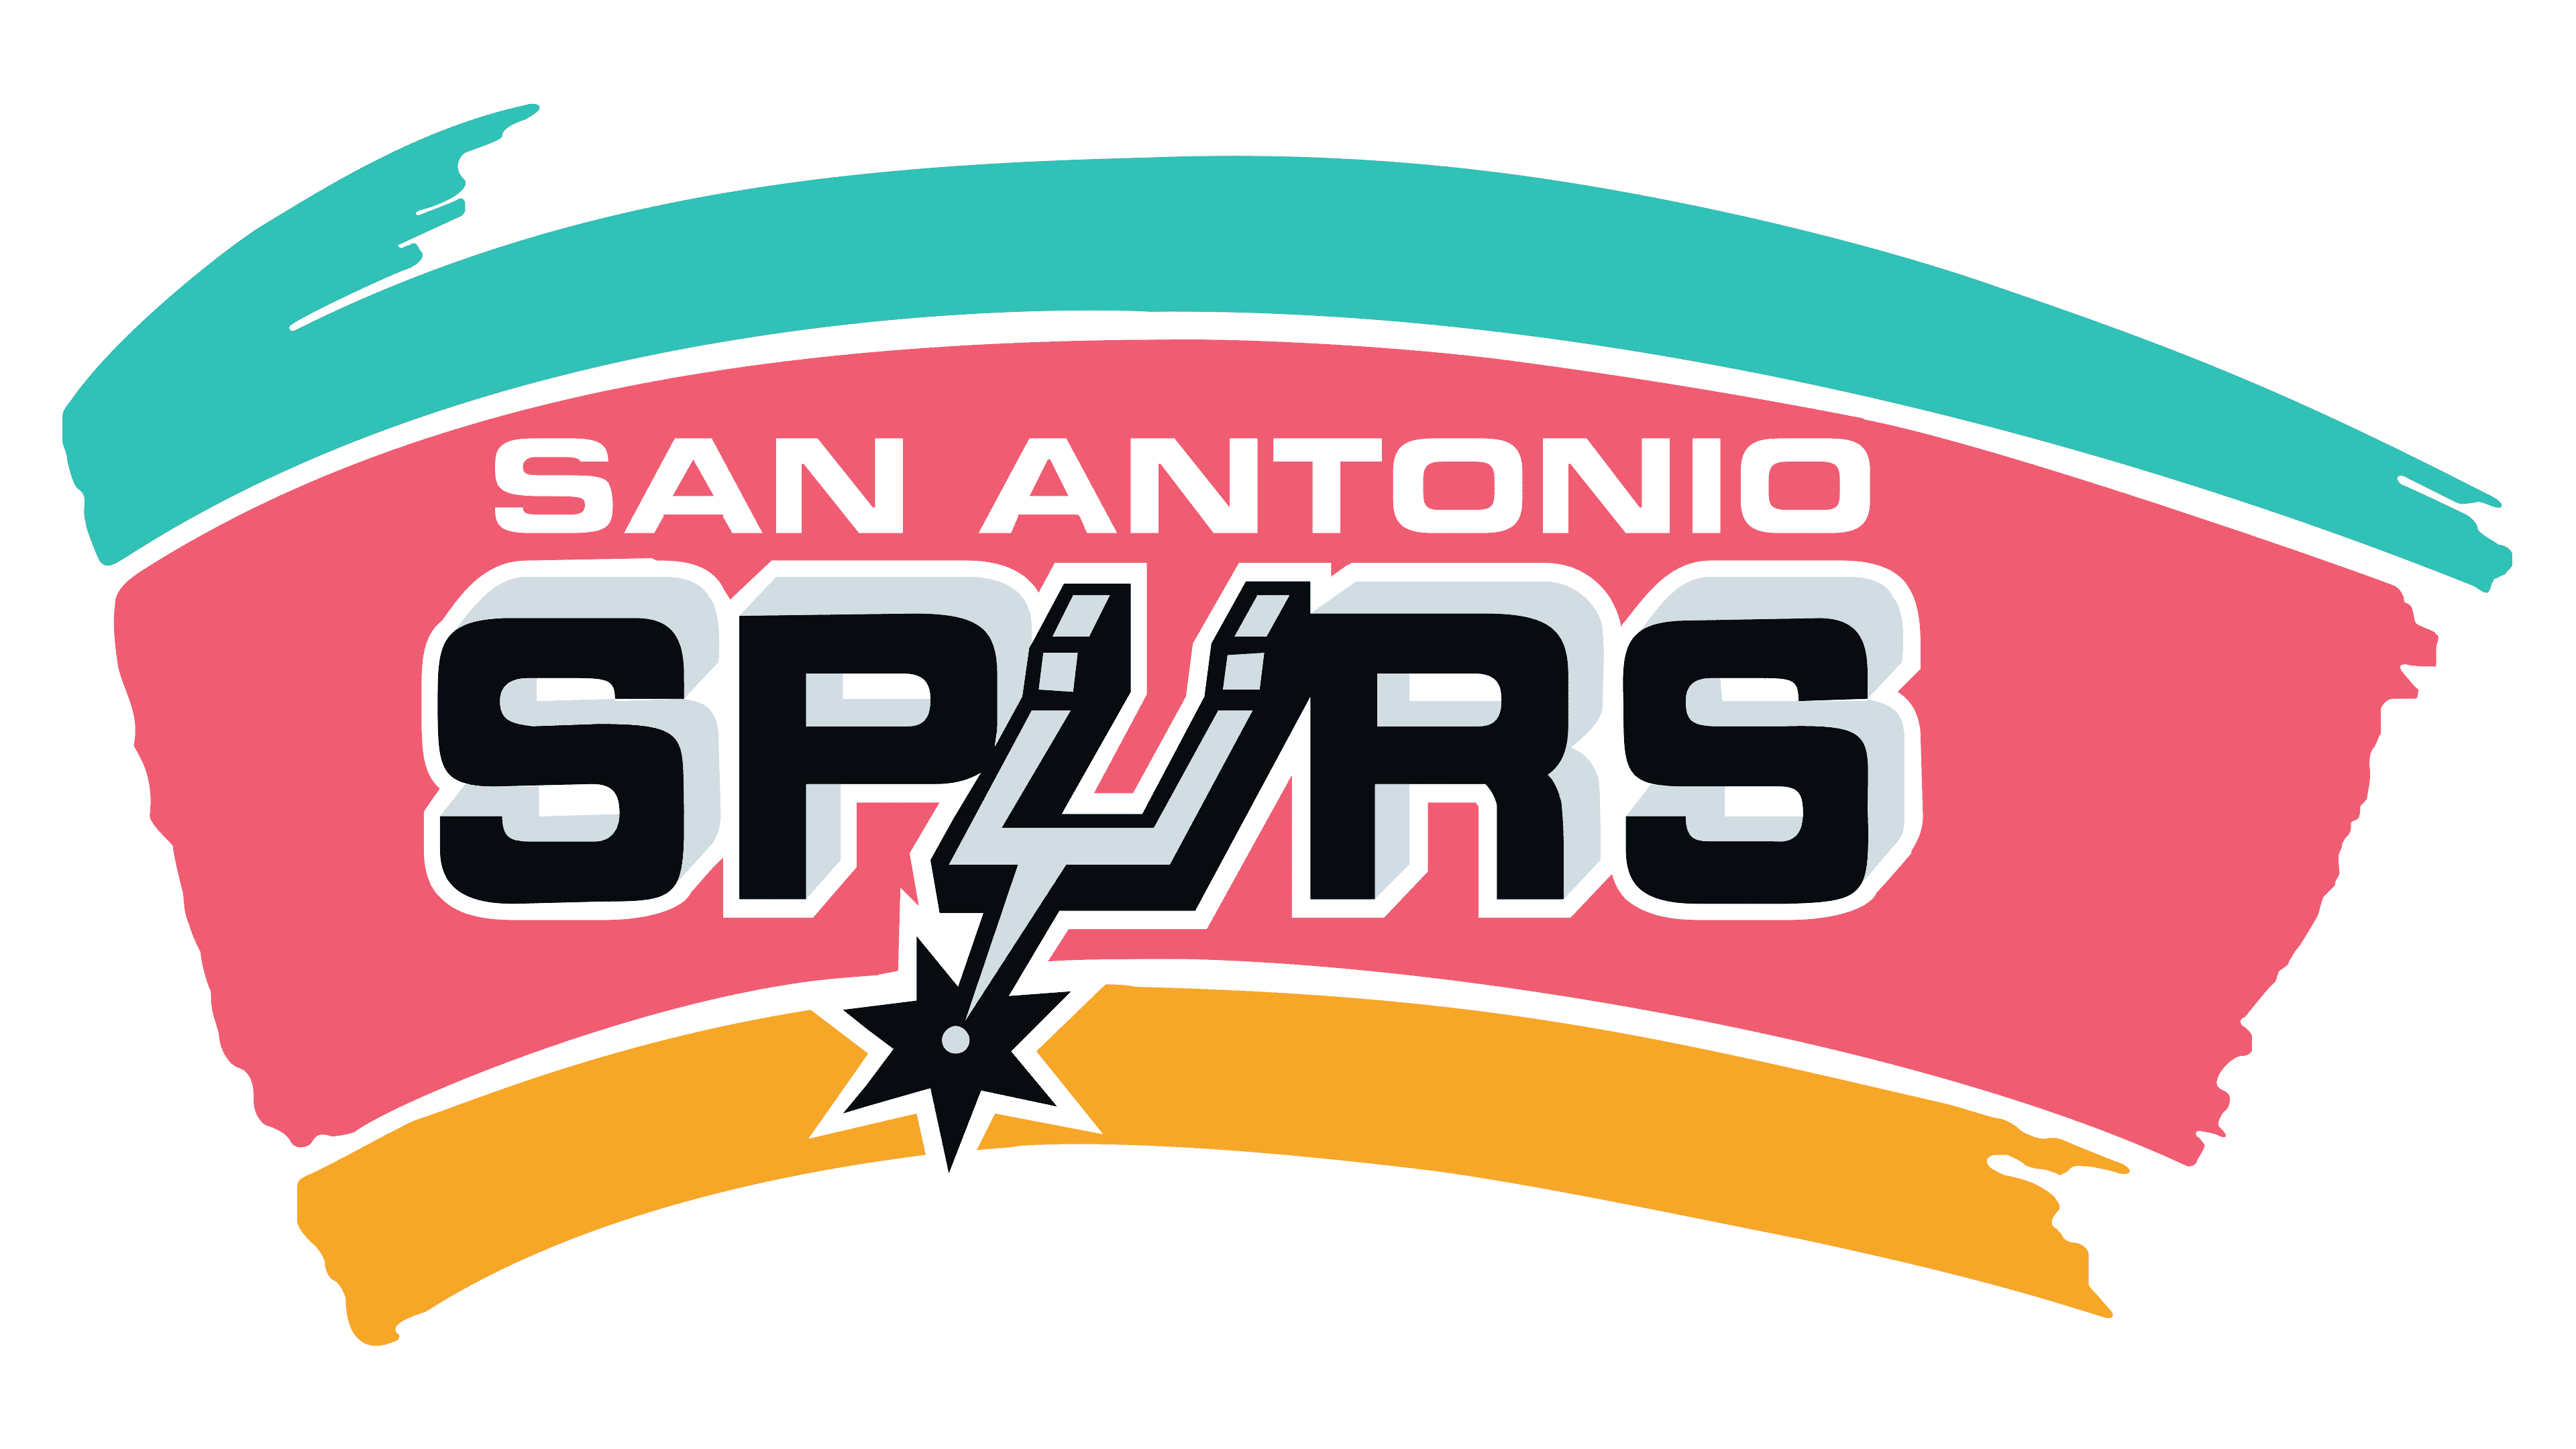 El logo de fiesta de los Spurs, uno de los más recordados de los 90's (FOTOGRAFÍA gentileza 1000 marcas).